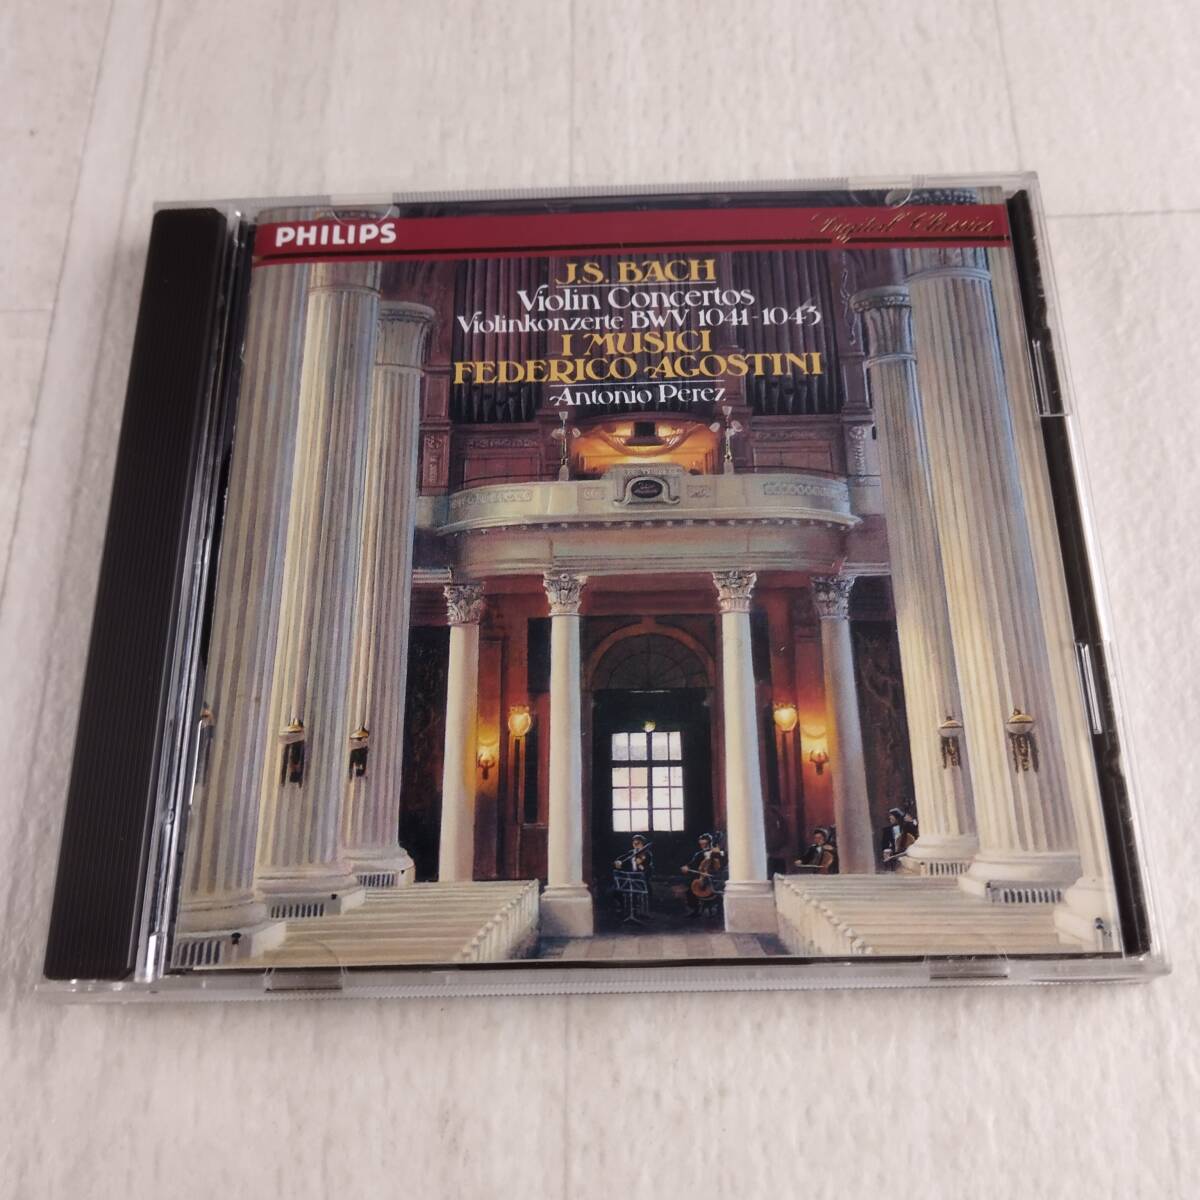 1MC11 CD フェデリコ・アゴスティーニ アントニオ・ペレス イ・ムジチ合奏団 J.S.バッハ ヴァイオリン協奏曲第1番イ短調 BWV1041の画像1